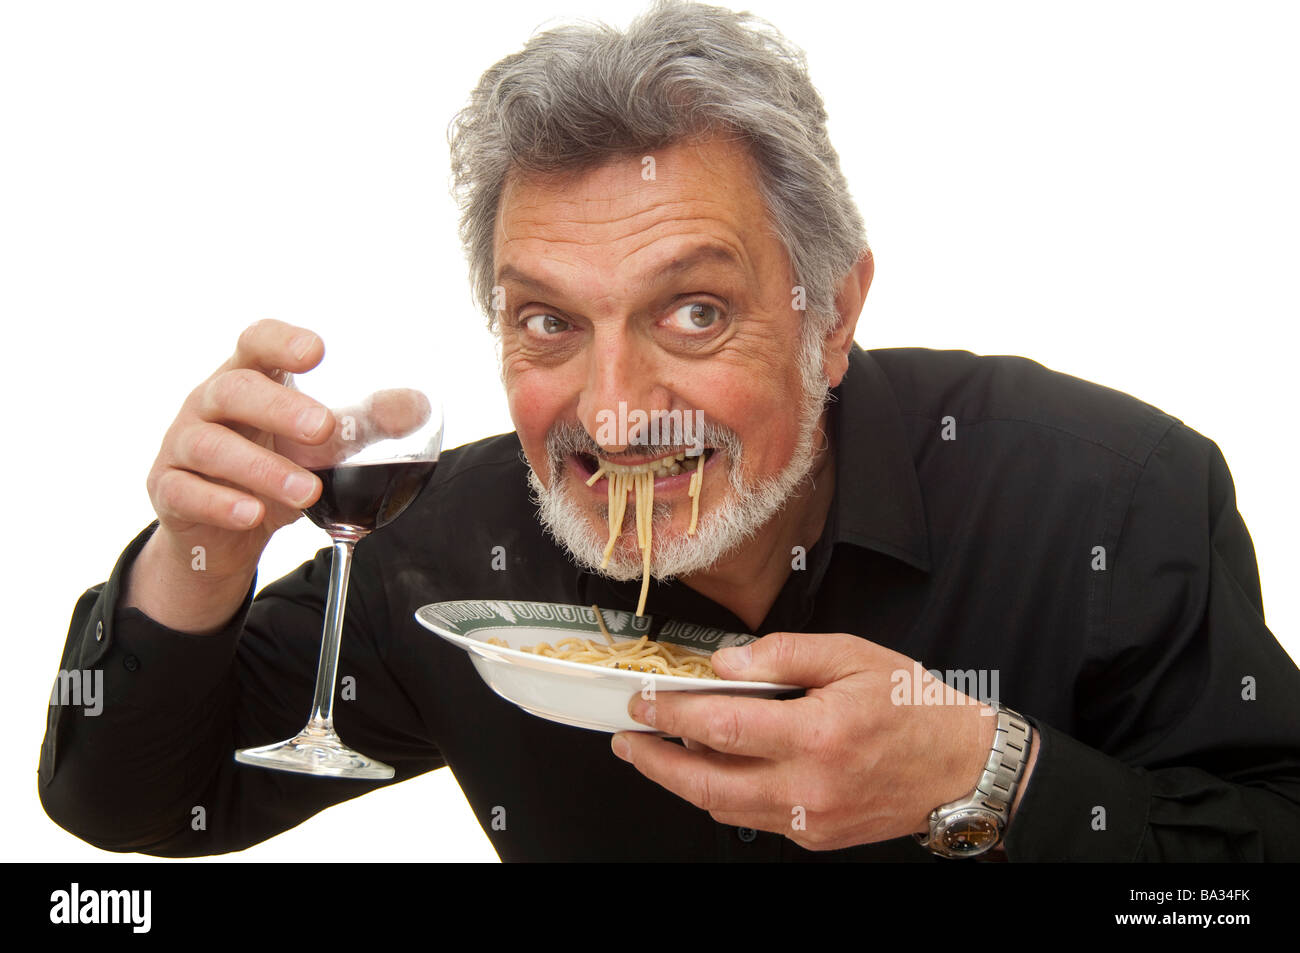 man eating pasta Stock Photo